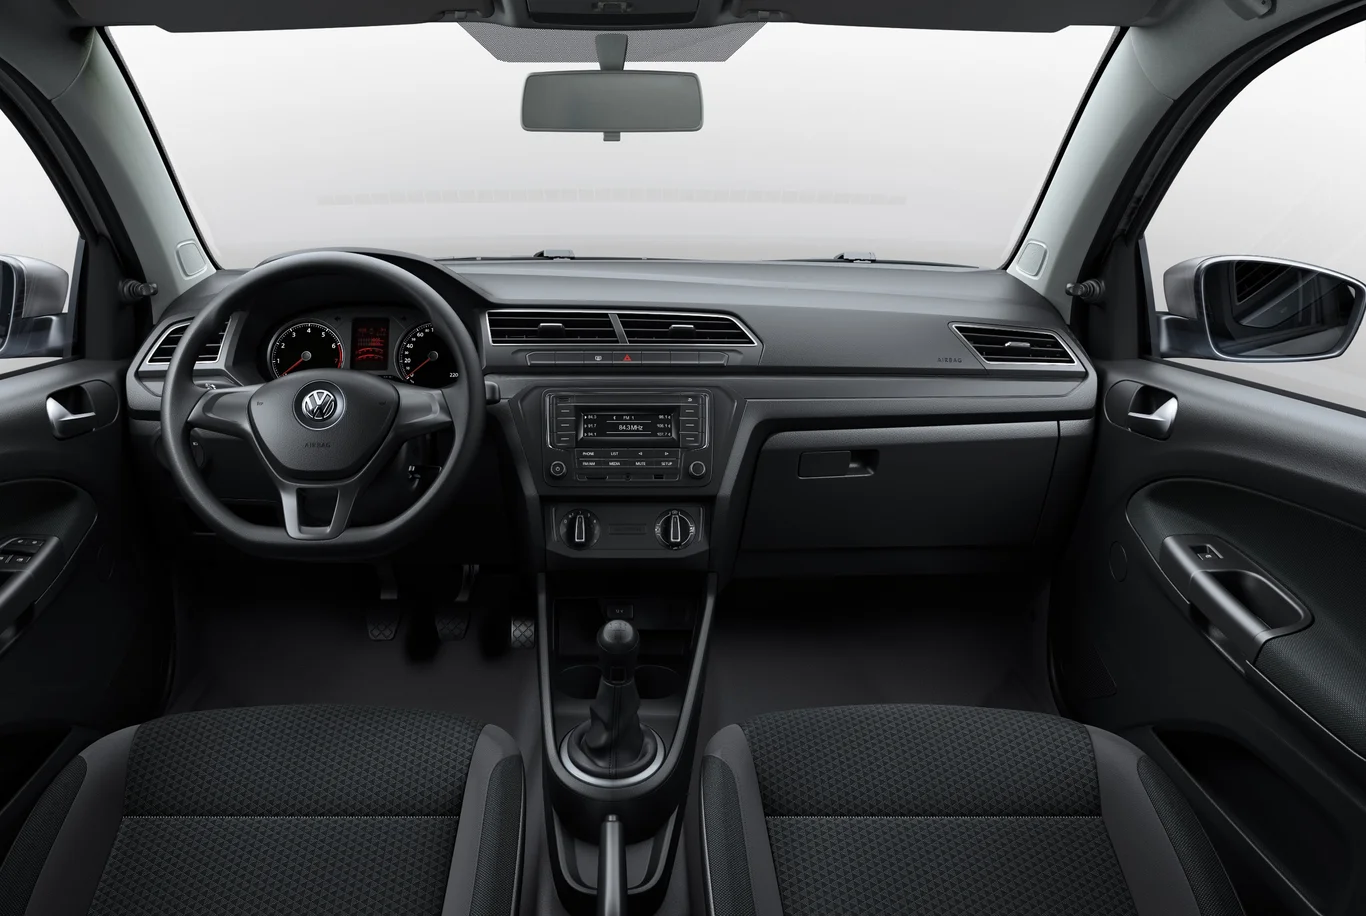 Volkswagen Gol 1.0 MPI Comfortline (Flex)